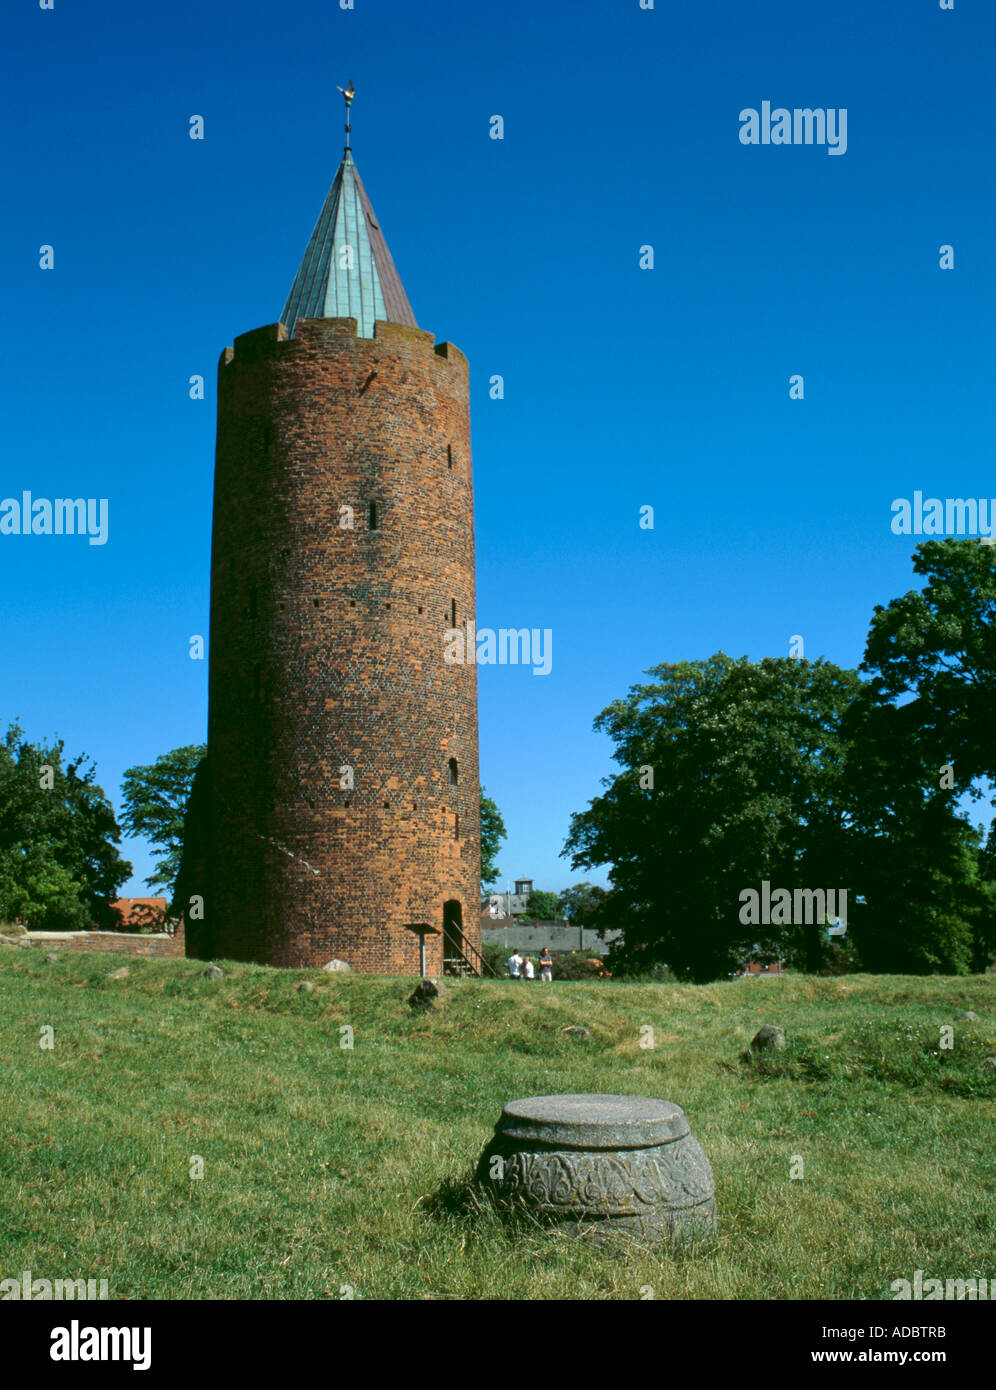 Gåsetårnet, or Goose Tower, Vordingborg Castle, Vordingborg, Sjælland (Zealand), Denmark Stock Photo